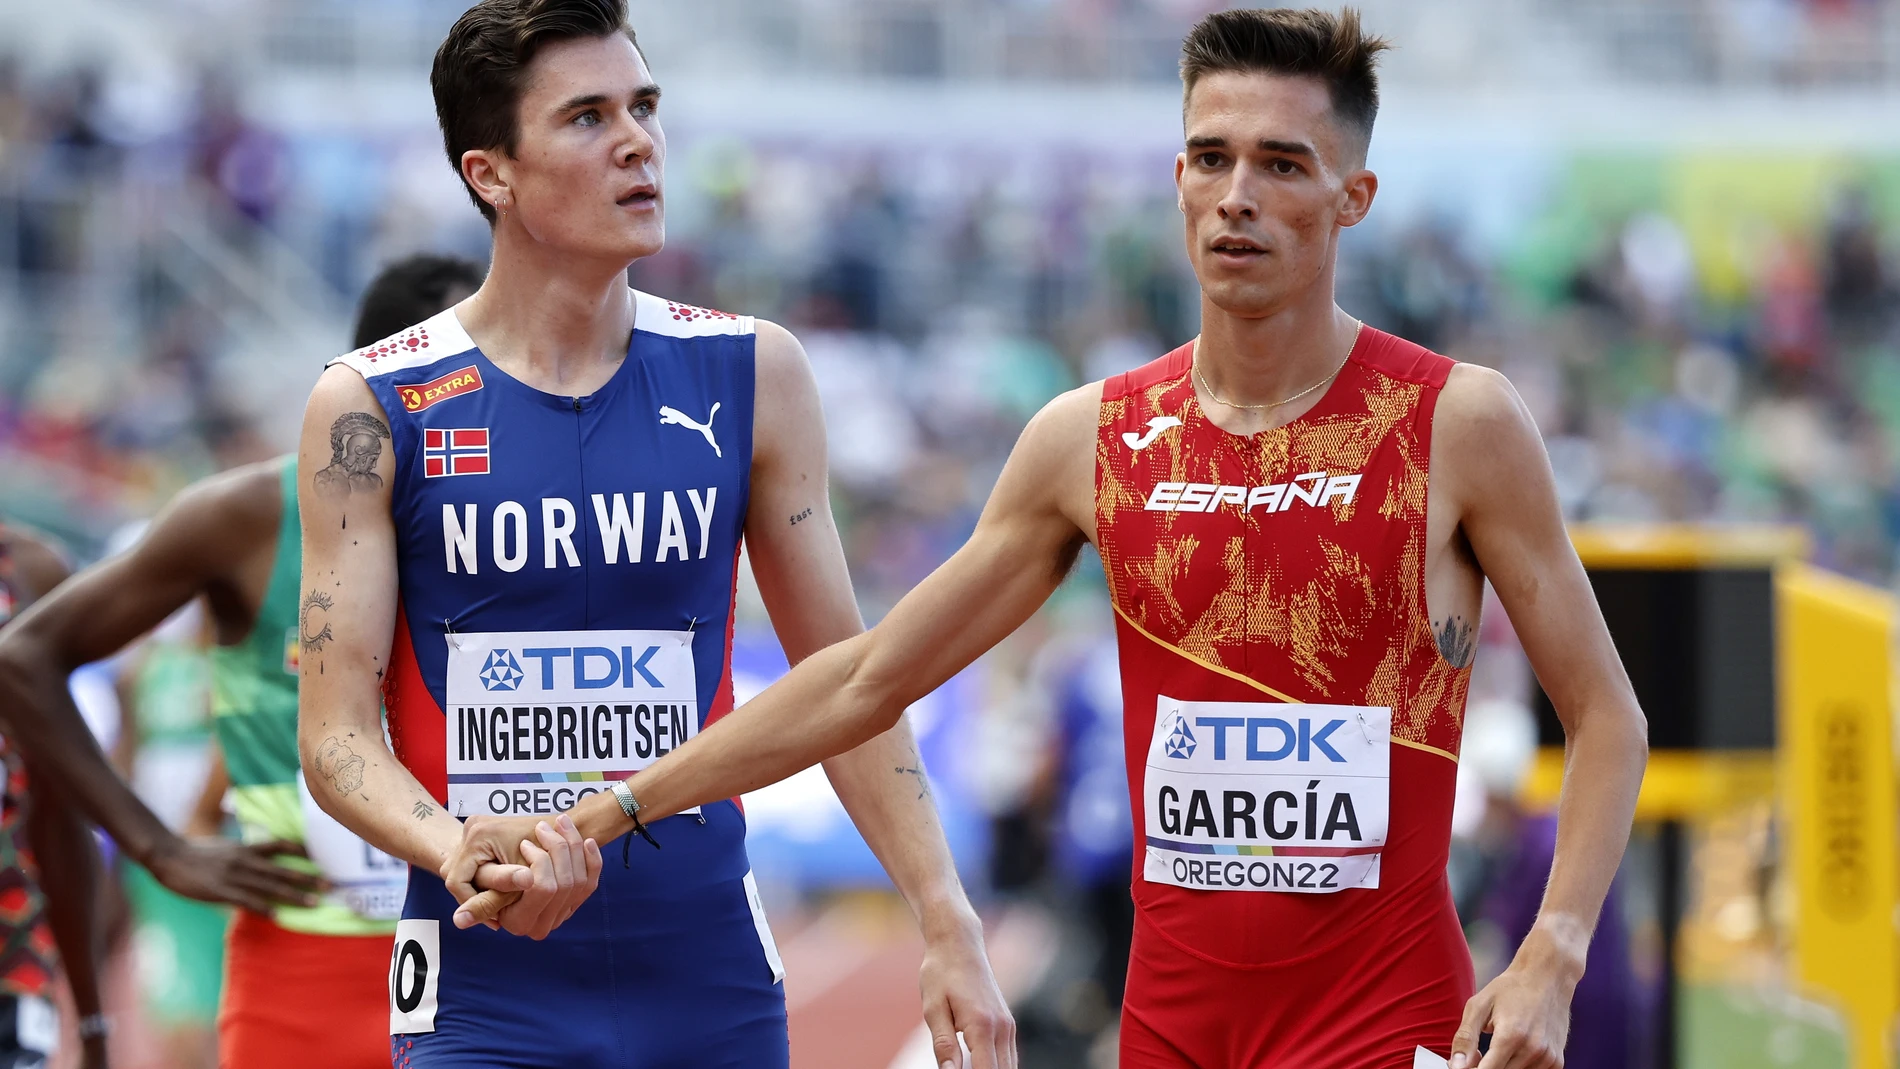 Jakob Ingebrigtsen, el noruego favorito en el 1.500 en el Mundial de Eugene, saluda a Mario García Romo